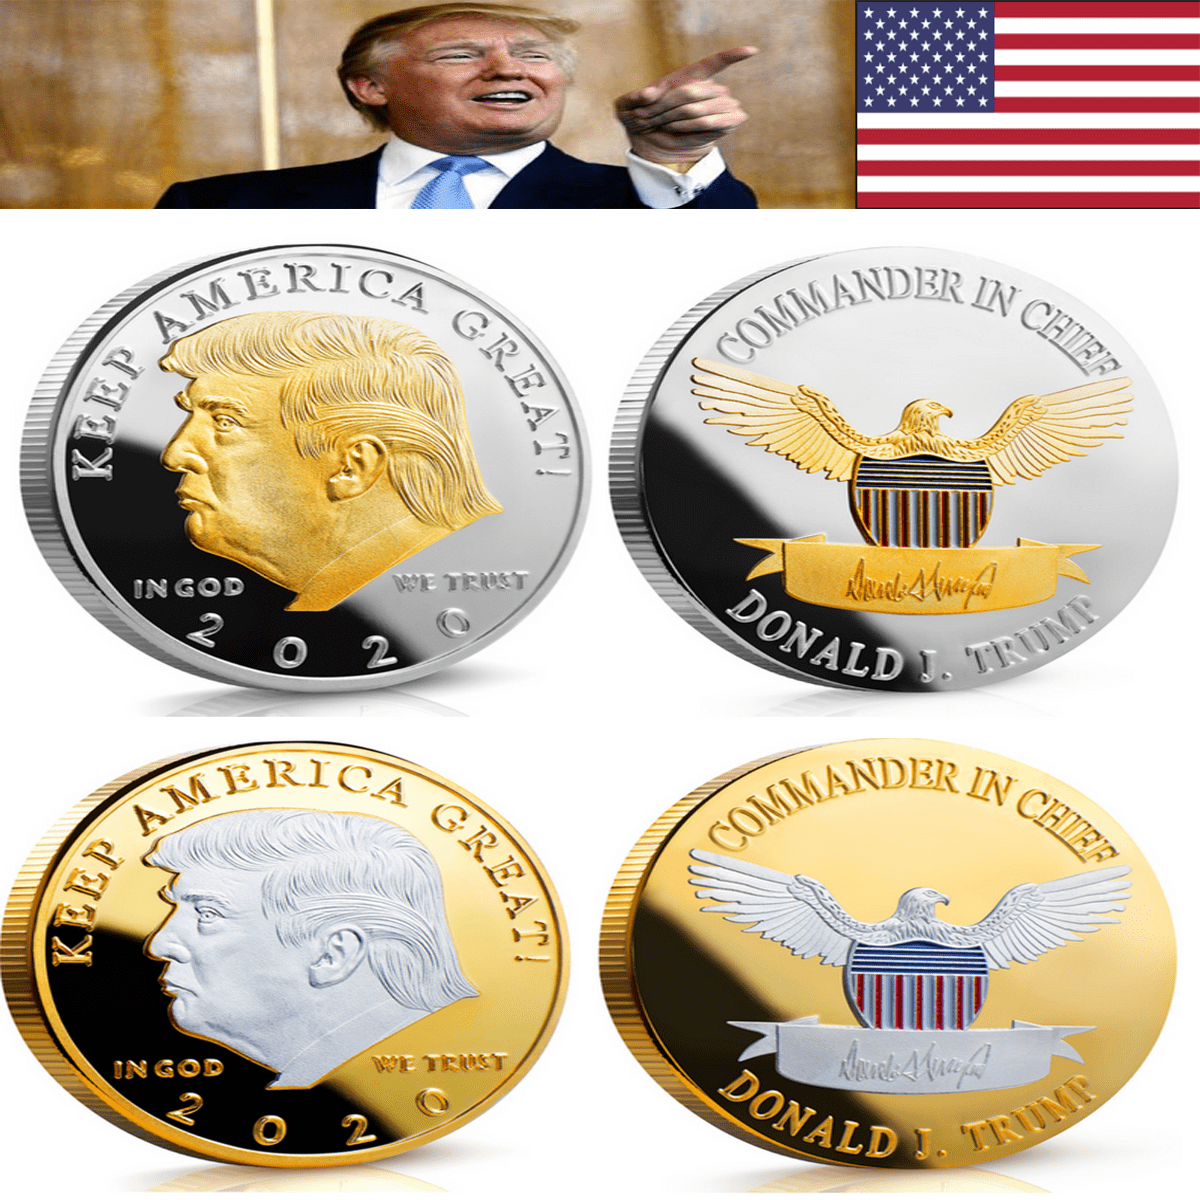 Donald Trump 2016 Two Tone Challenge Coin 2 Tone RARE FIND 